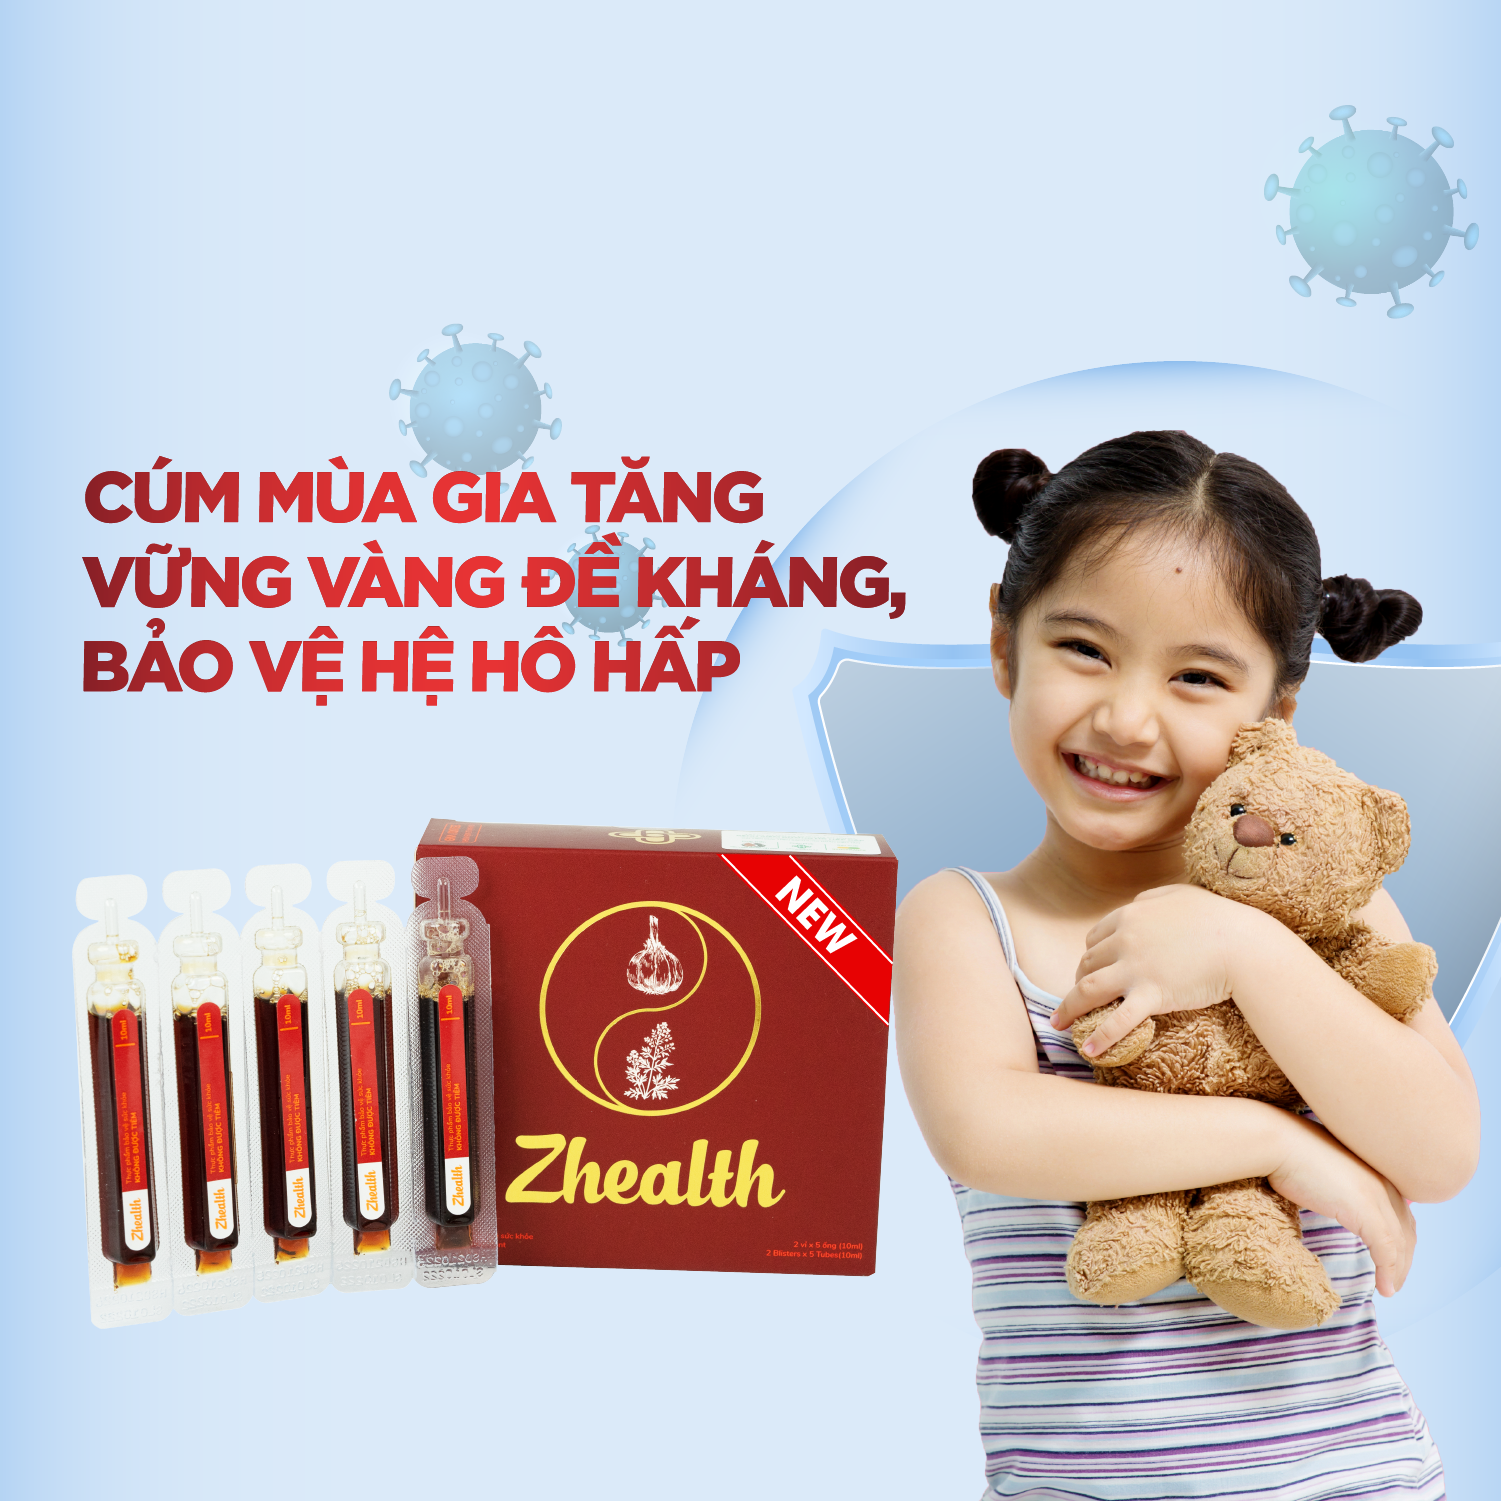 Siro Zhealth - Hỗ trợ tăng cường sức đề kháng, Hệ miễn dịch, Bổ phế, Giảm ho tức thì, Cải thiện sức khỏe đường hô hấp cho trẻ nhỏ, người già(10ml)